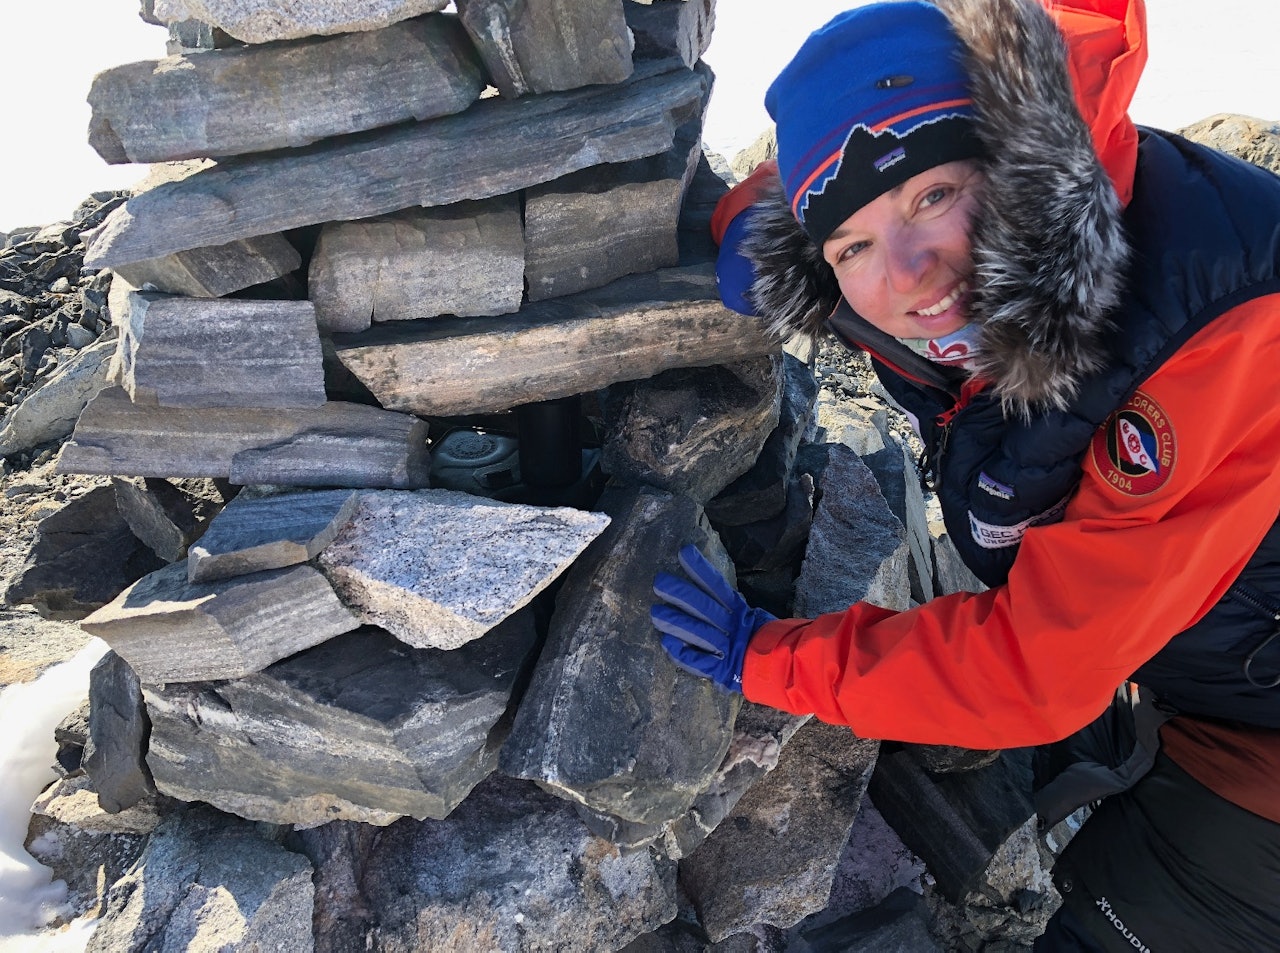 Astrid Furholt ved Roald Amundsens varde på Bettyfjellet, hvor han satte igjen en kanne parafin, fyrstikker og en hermetikkboks. Foto: Jan Sverre Sivertsen